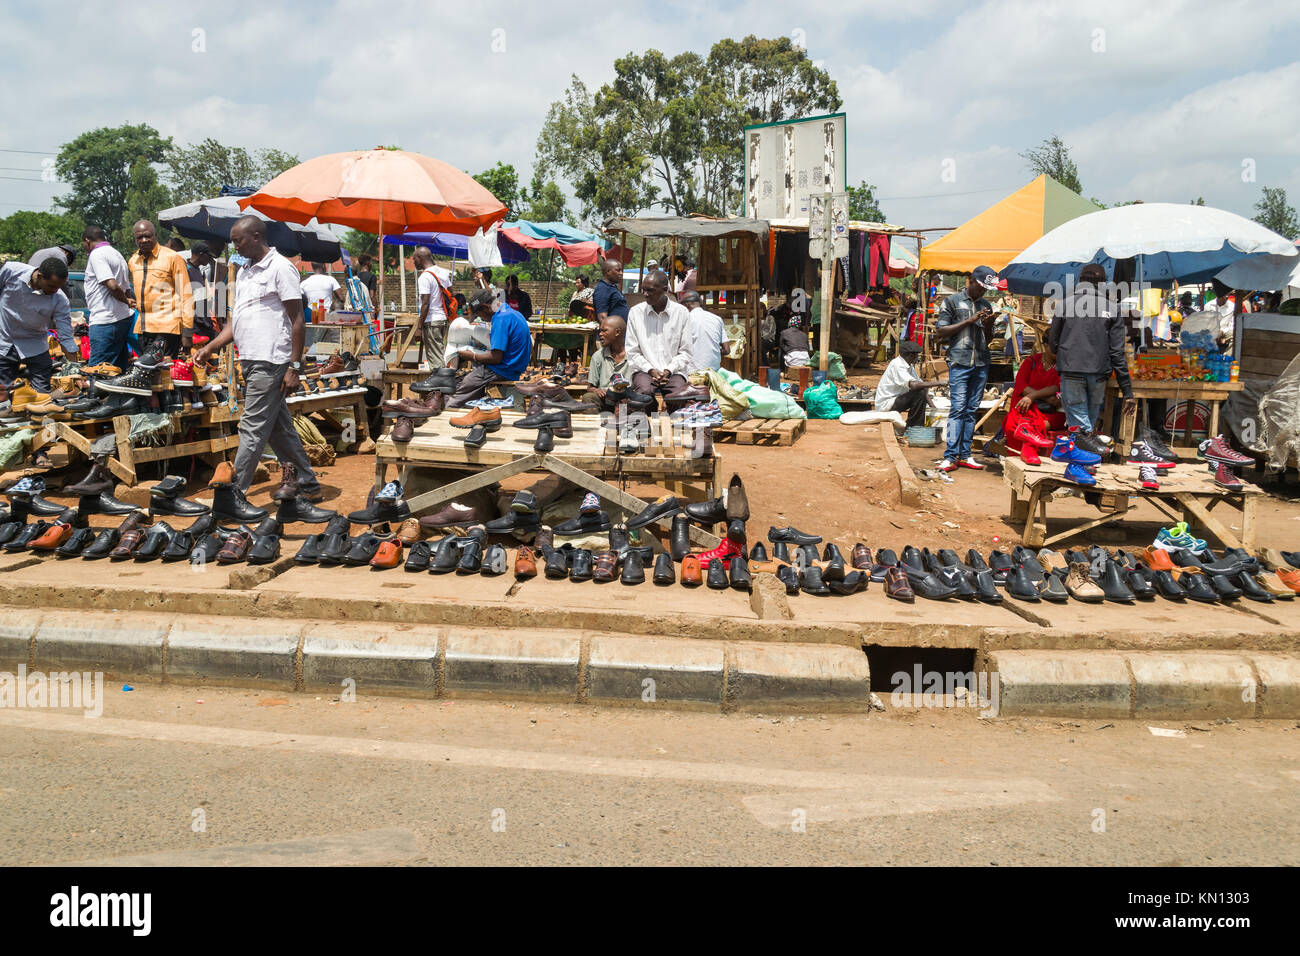 Allsopps marché avec des chaussures en vente sur l'affichage et les gens qui marchent autour de la navigation, Nairobi, Kenya, Afrique de l'Est Banque D'Images